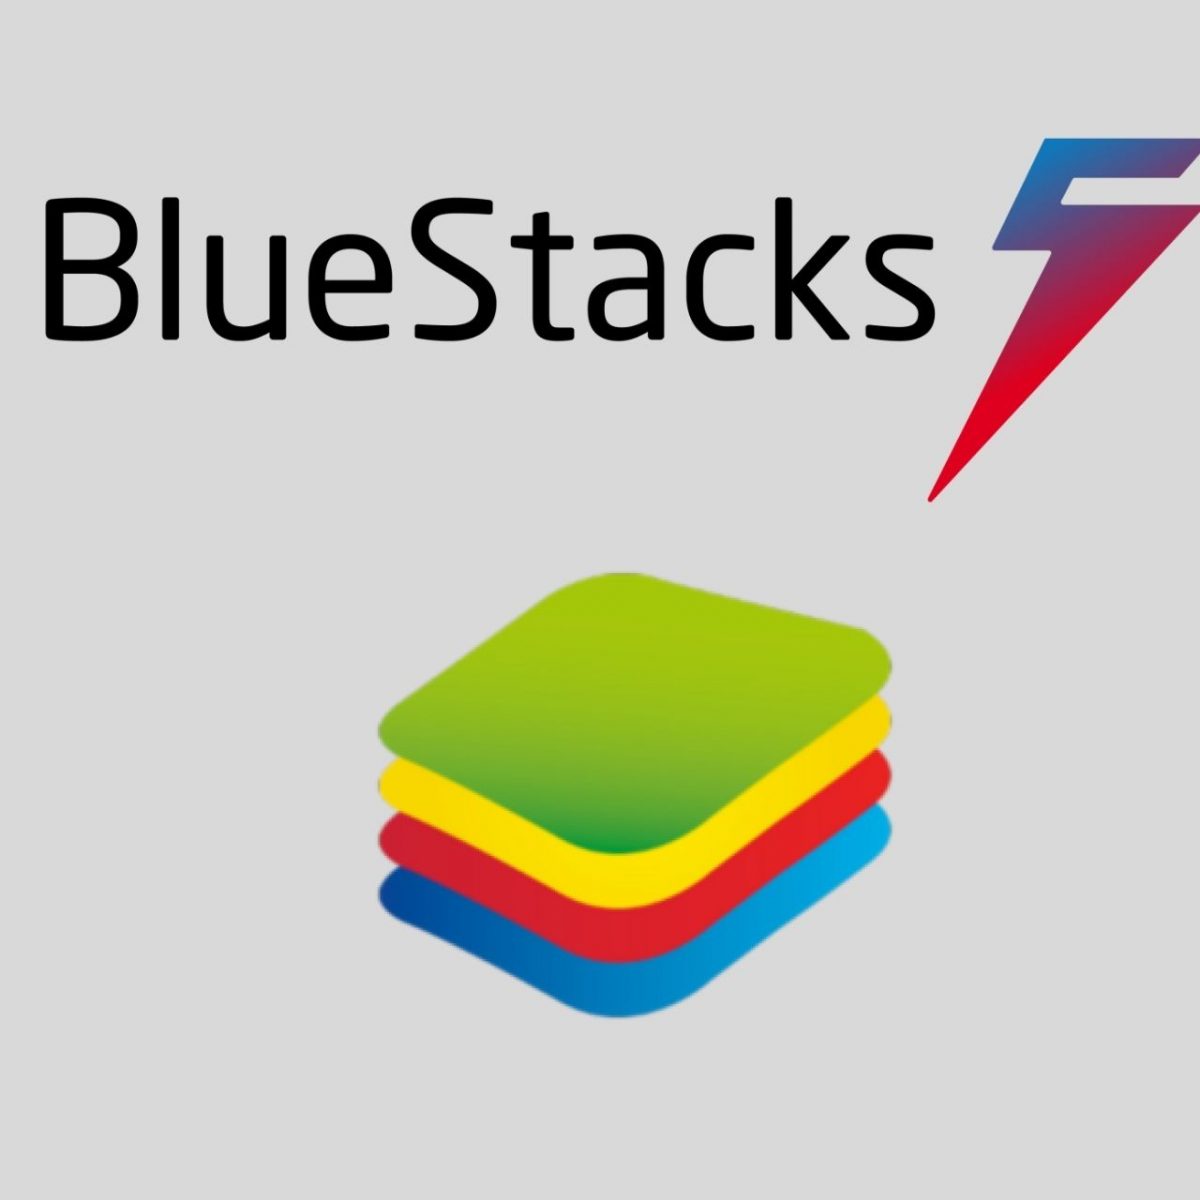 bluestacks emulator for pc download